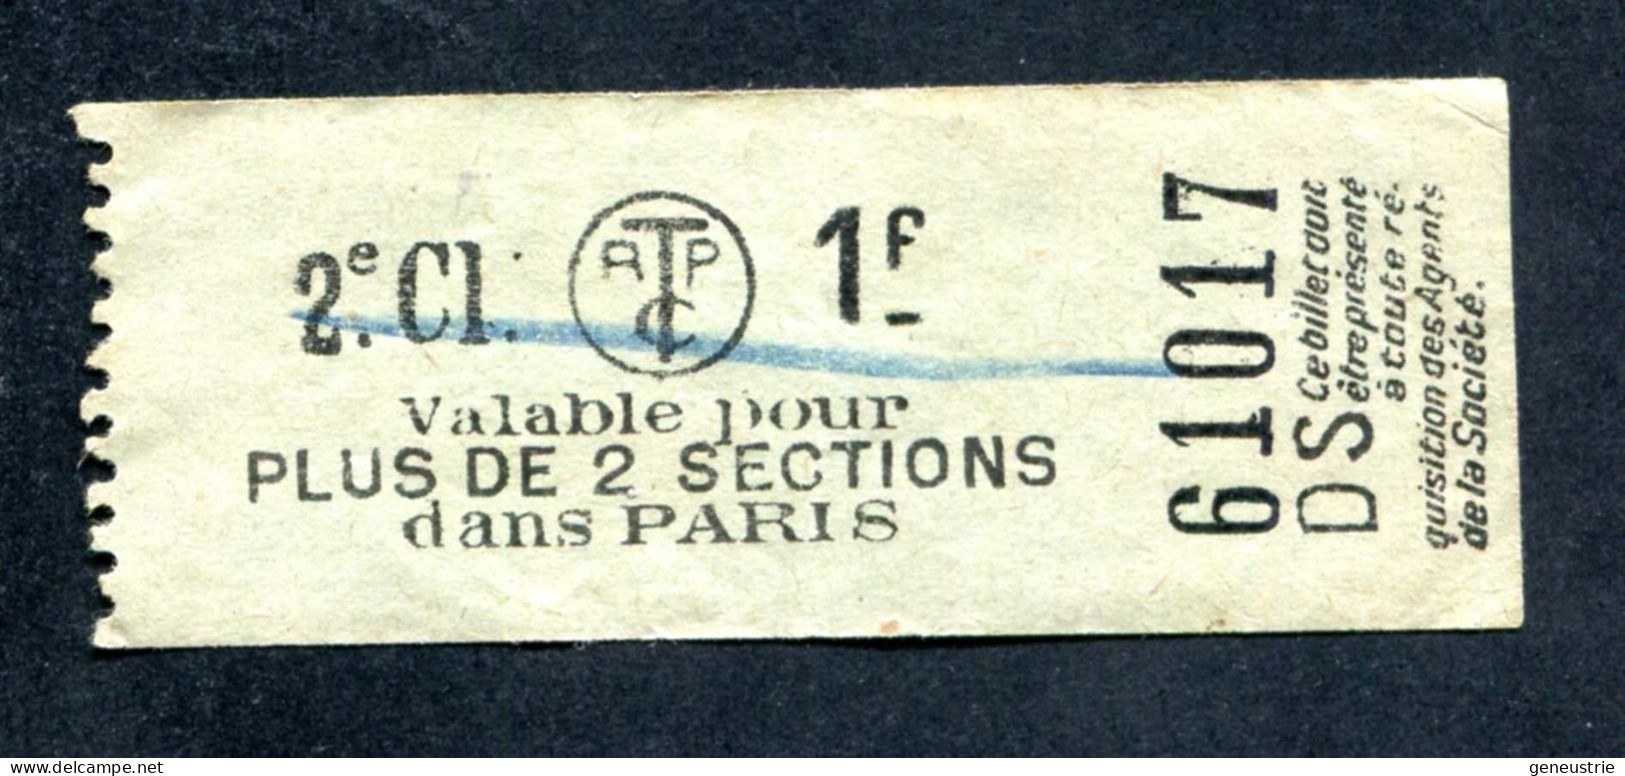 Ticket De Tramways Parisiens 1921 à 1938 (STCRP) 2e Classe 1f - Paris" Tramway - Tram - Europe